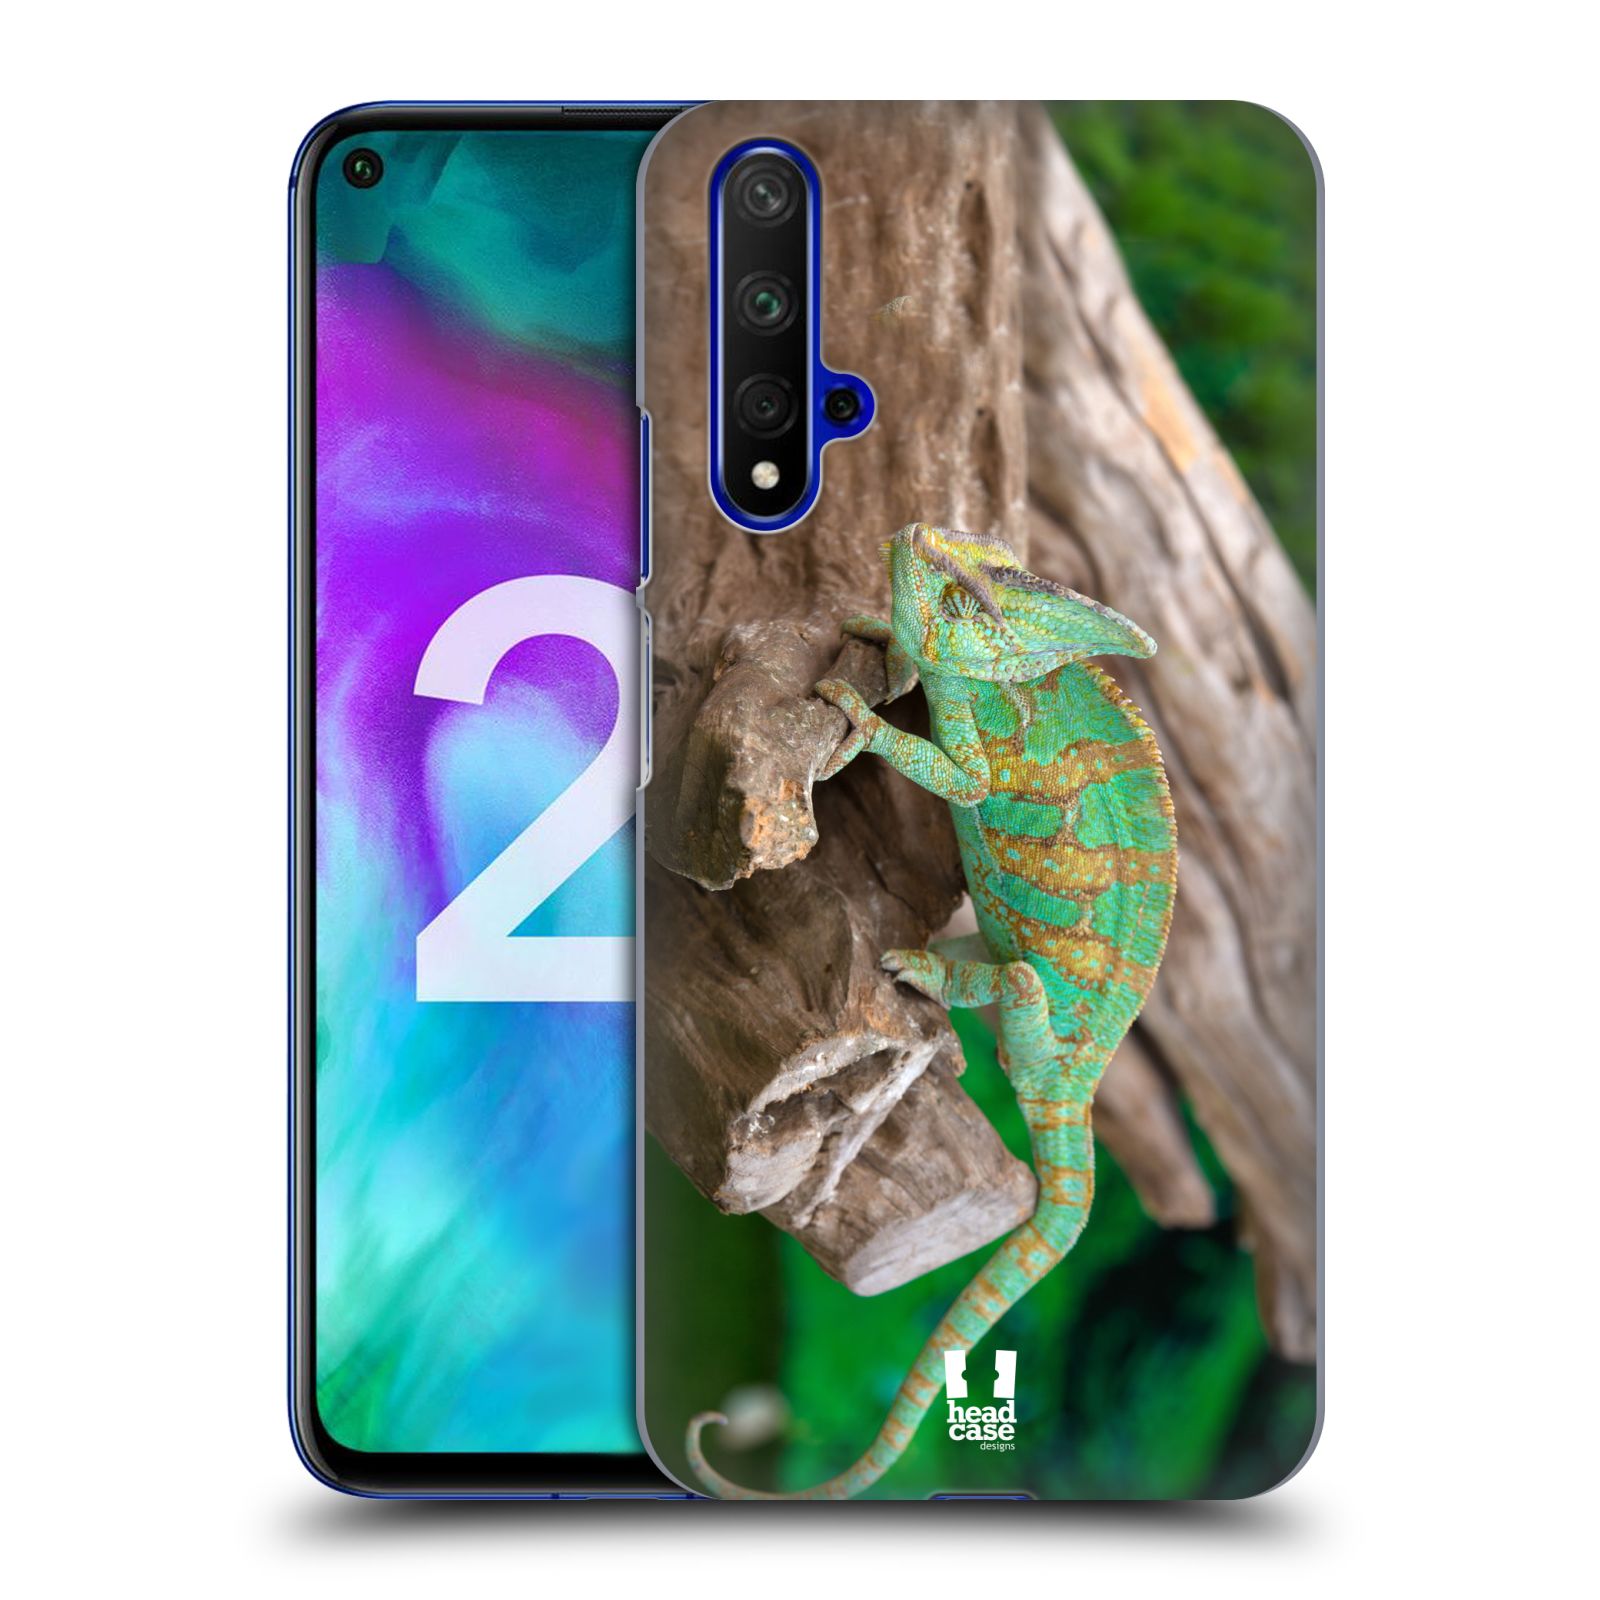 Pouzdro na mobil Honor 20 - HEAD CASE - vzor slavná zvířata foto chameleon